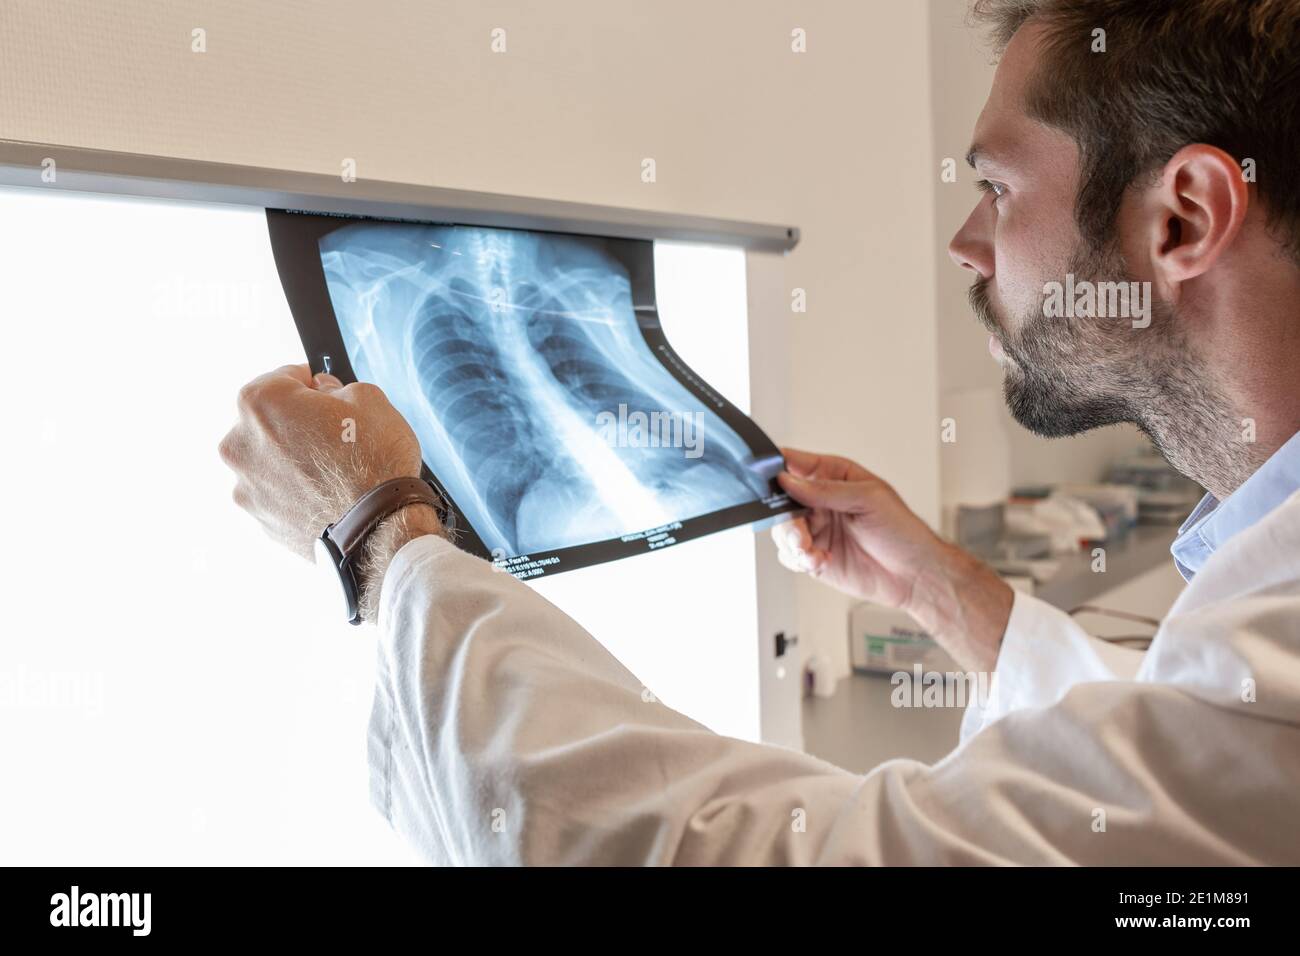 medico che esamina una radiografia in ospedale Foto Stock